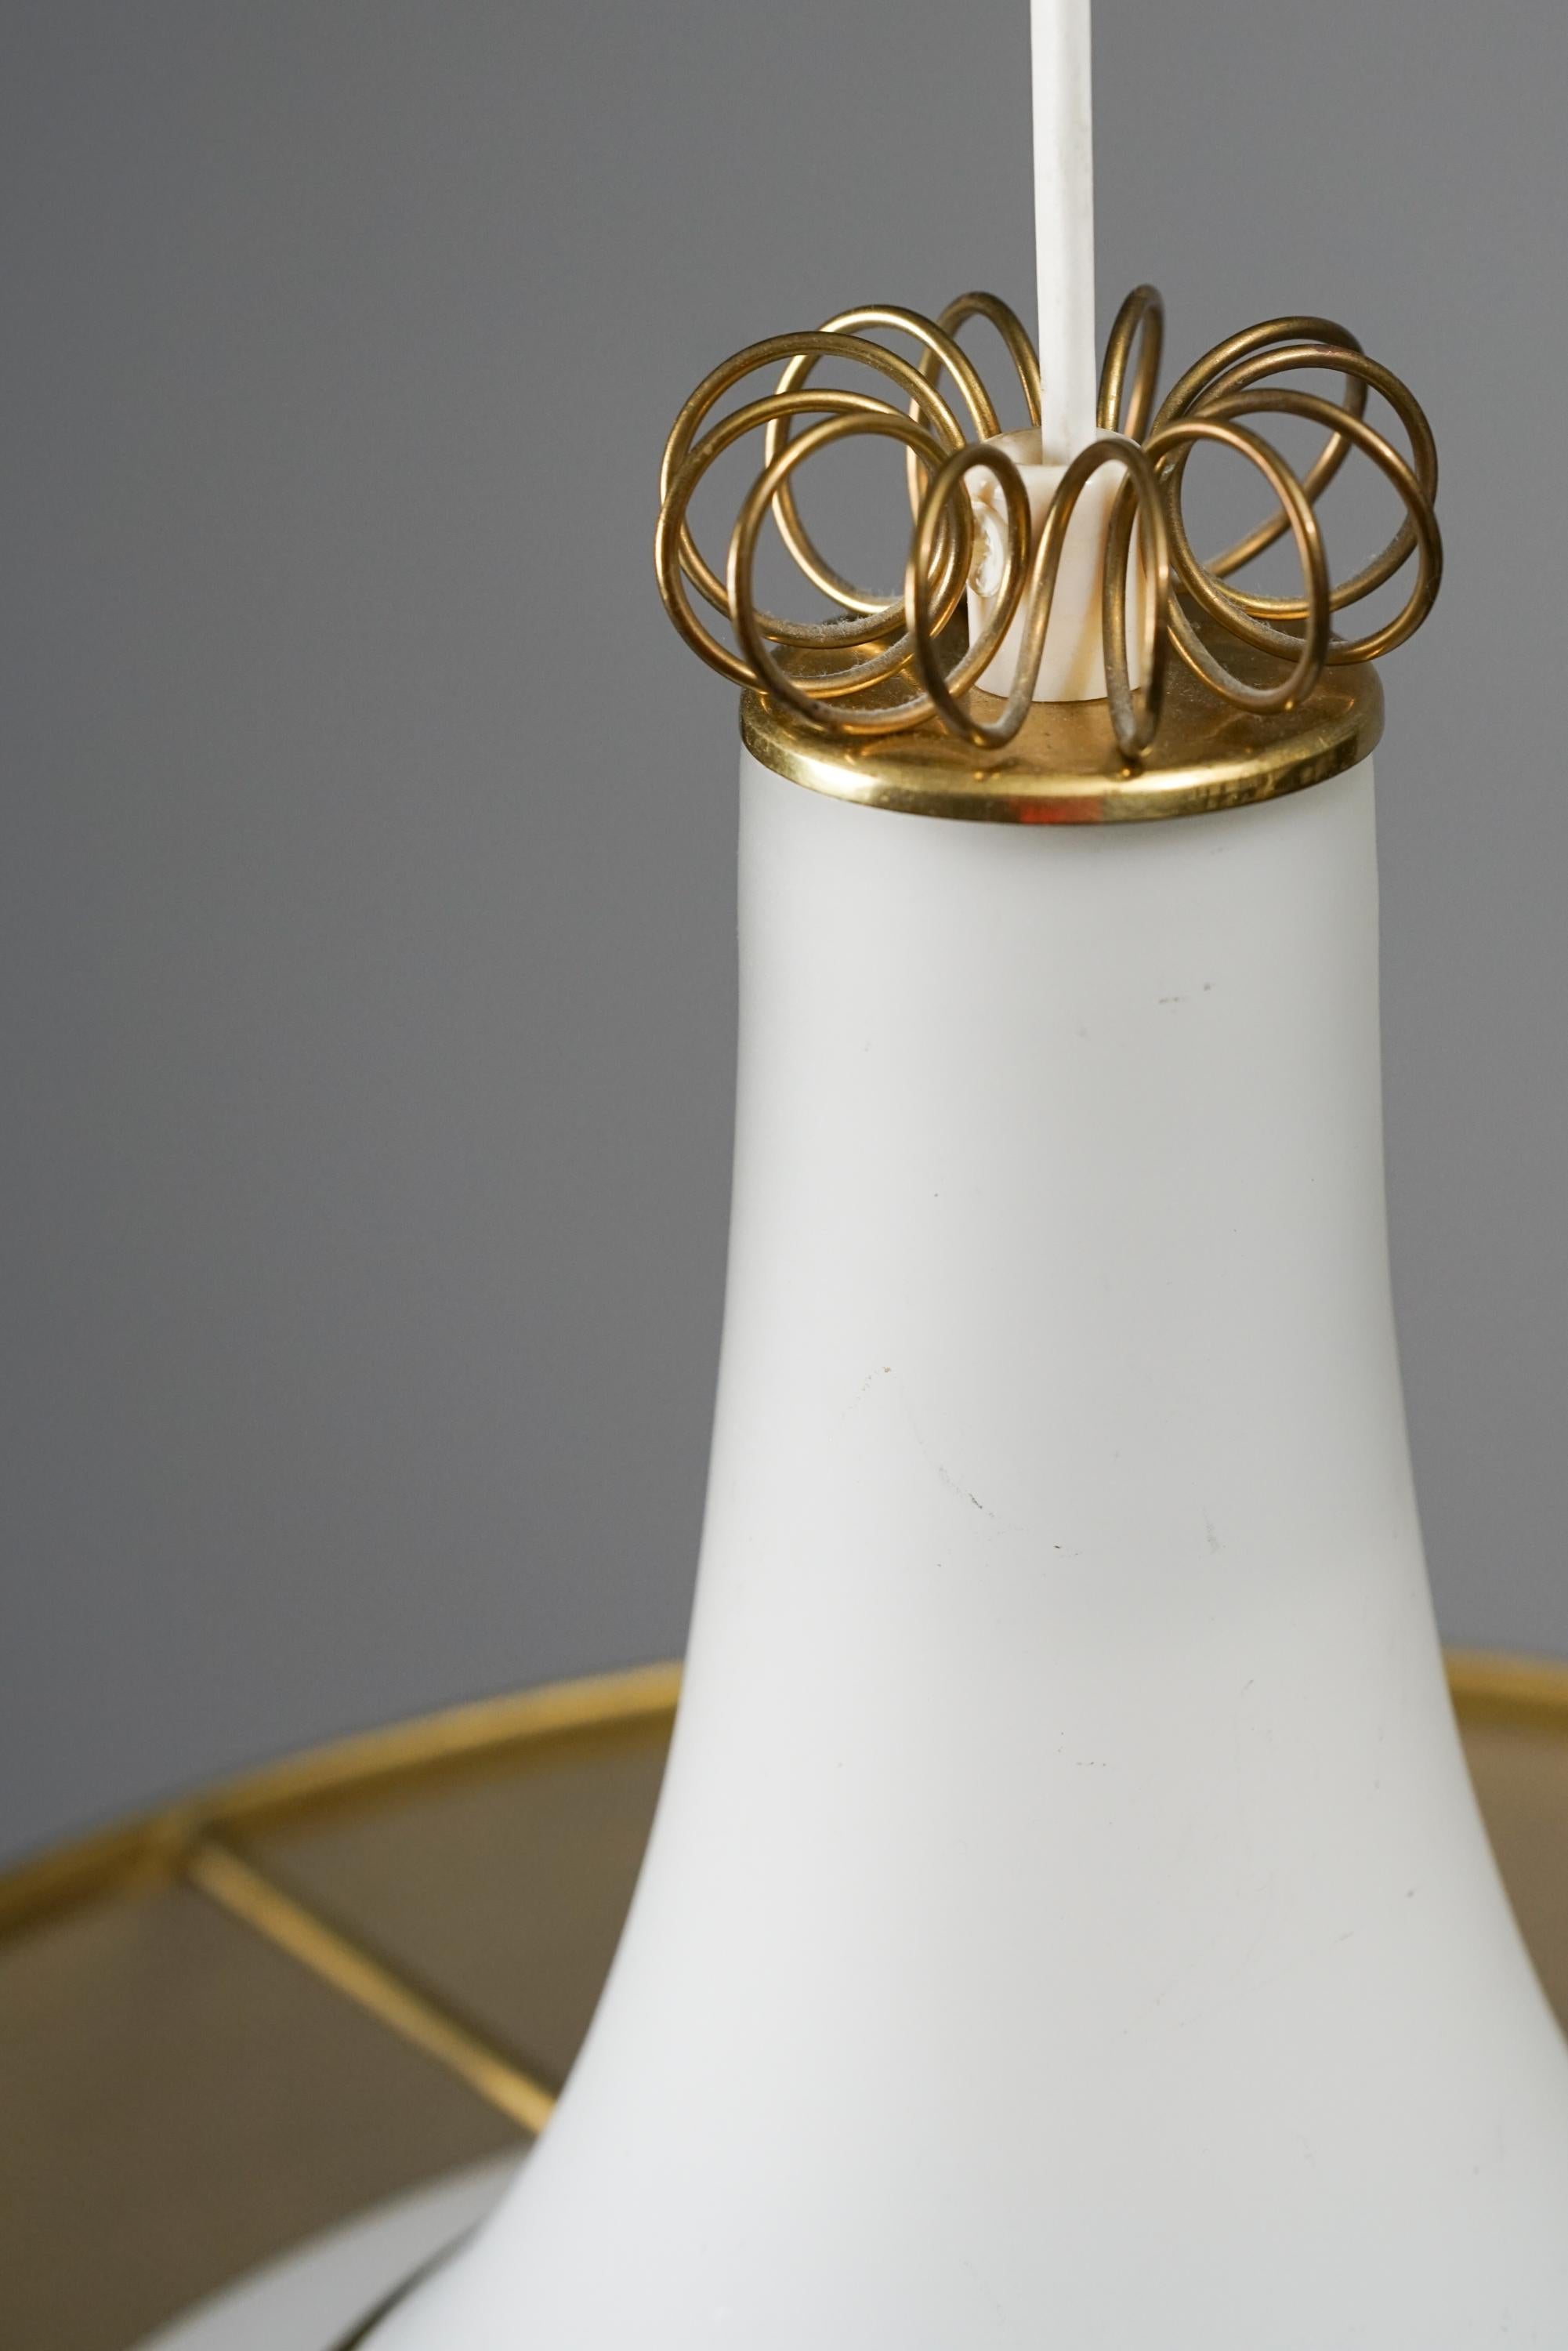 Scandinavian Modern Opaline Glass Pendant by Maria Lindeman, Idman, 1940s/1950s For Sale 1